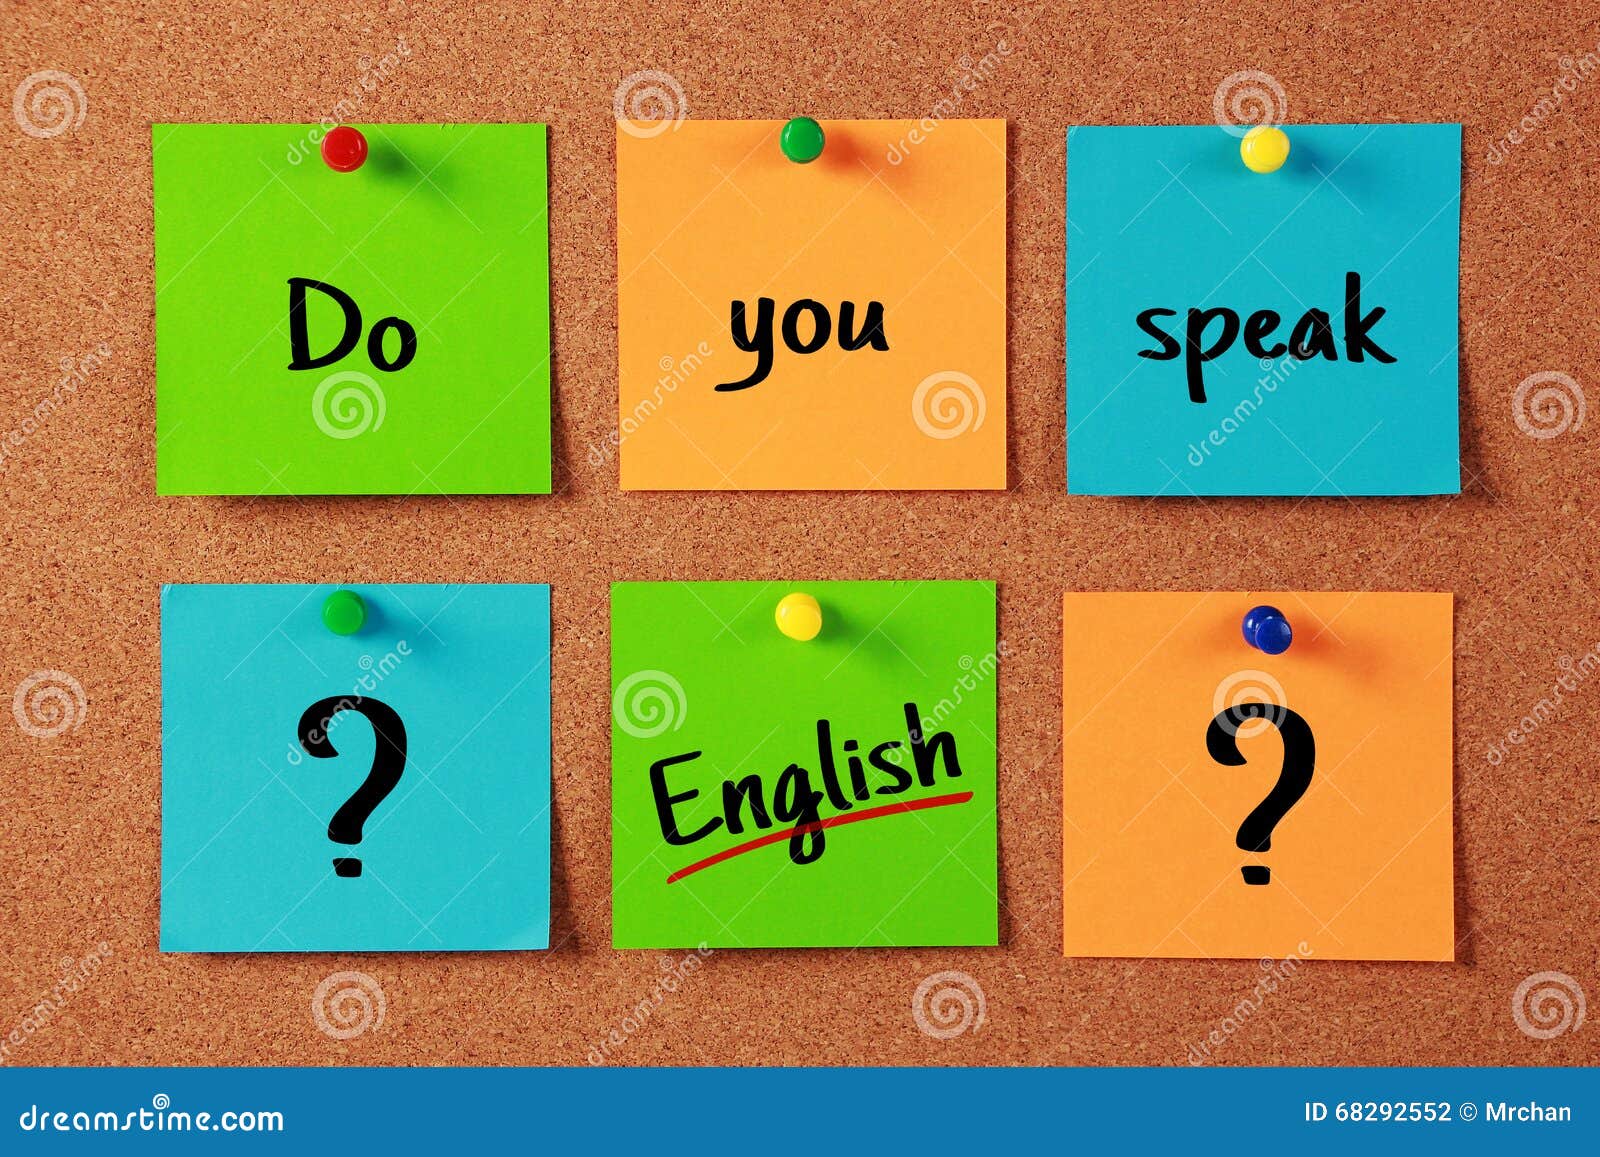 Do you speak good english. Английский язык do you speak. Английское you. Can you speak English. Do you speak English картинки.